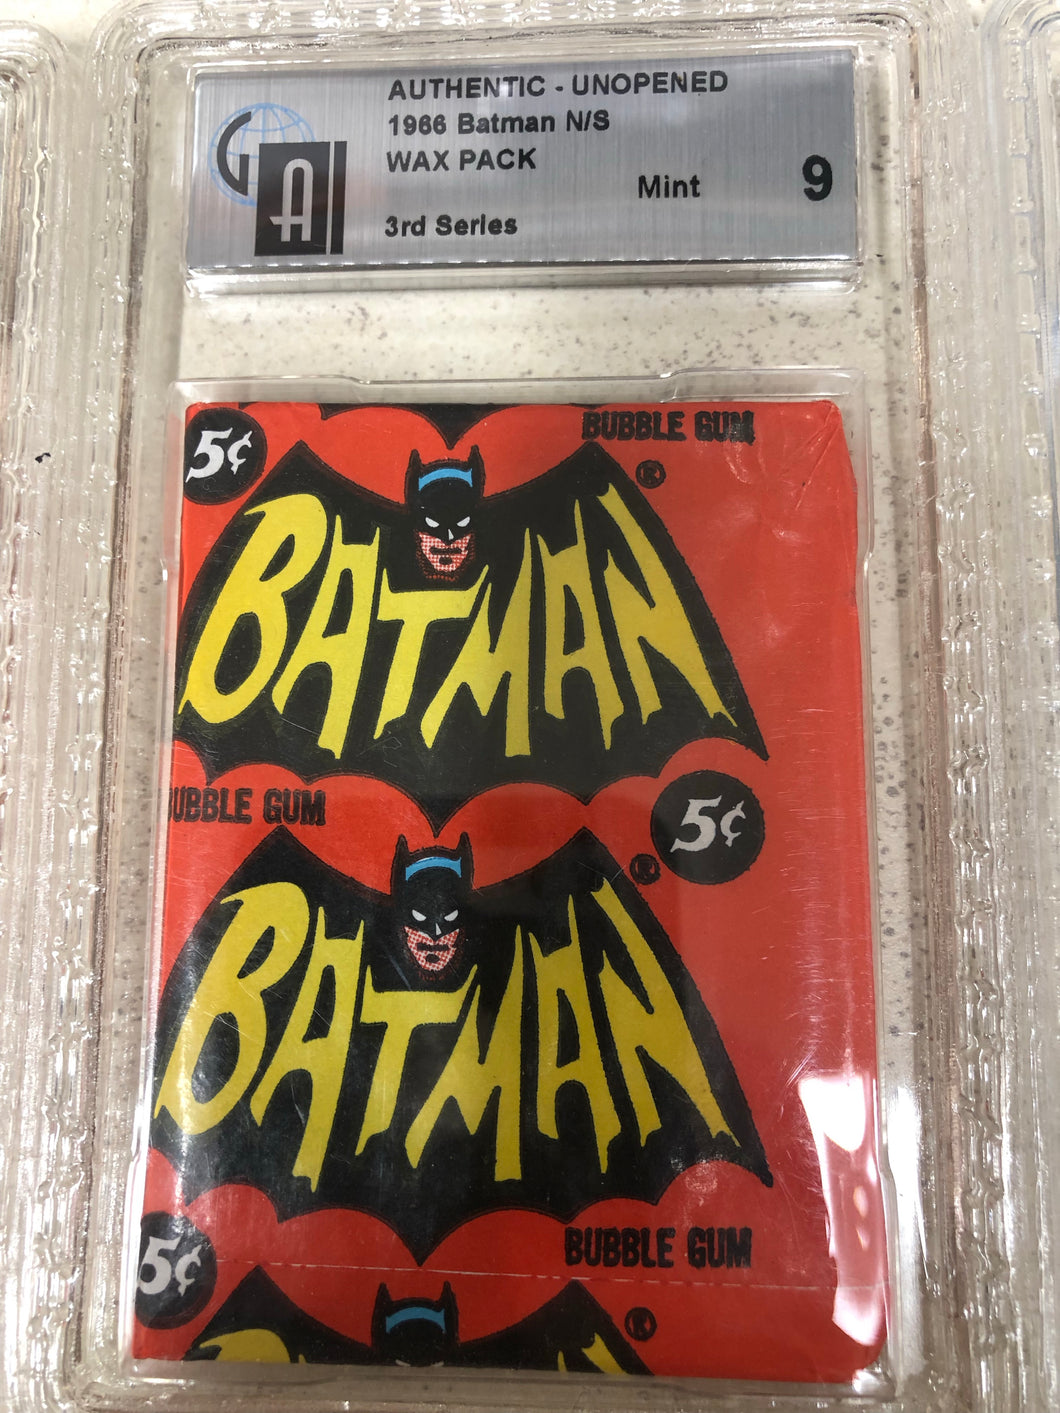 1966 GAI 9 Batman 3rd Series Wax Pack